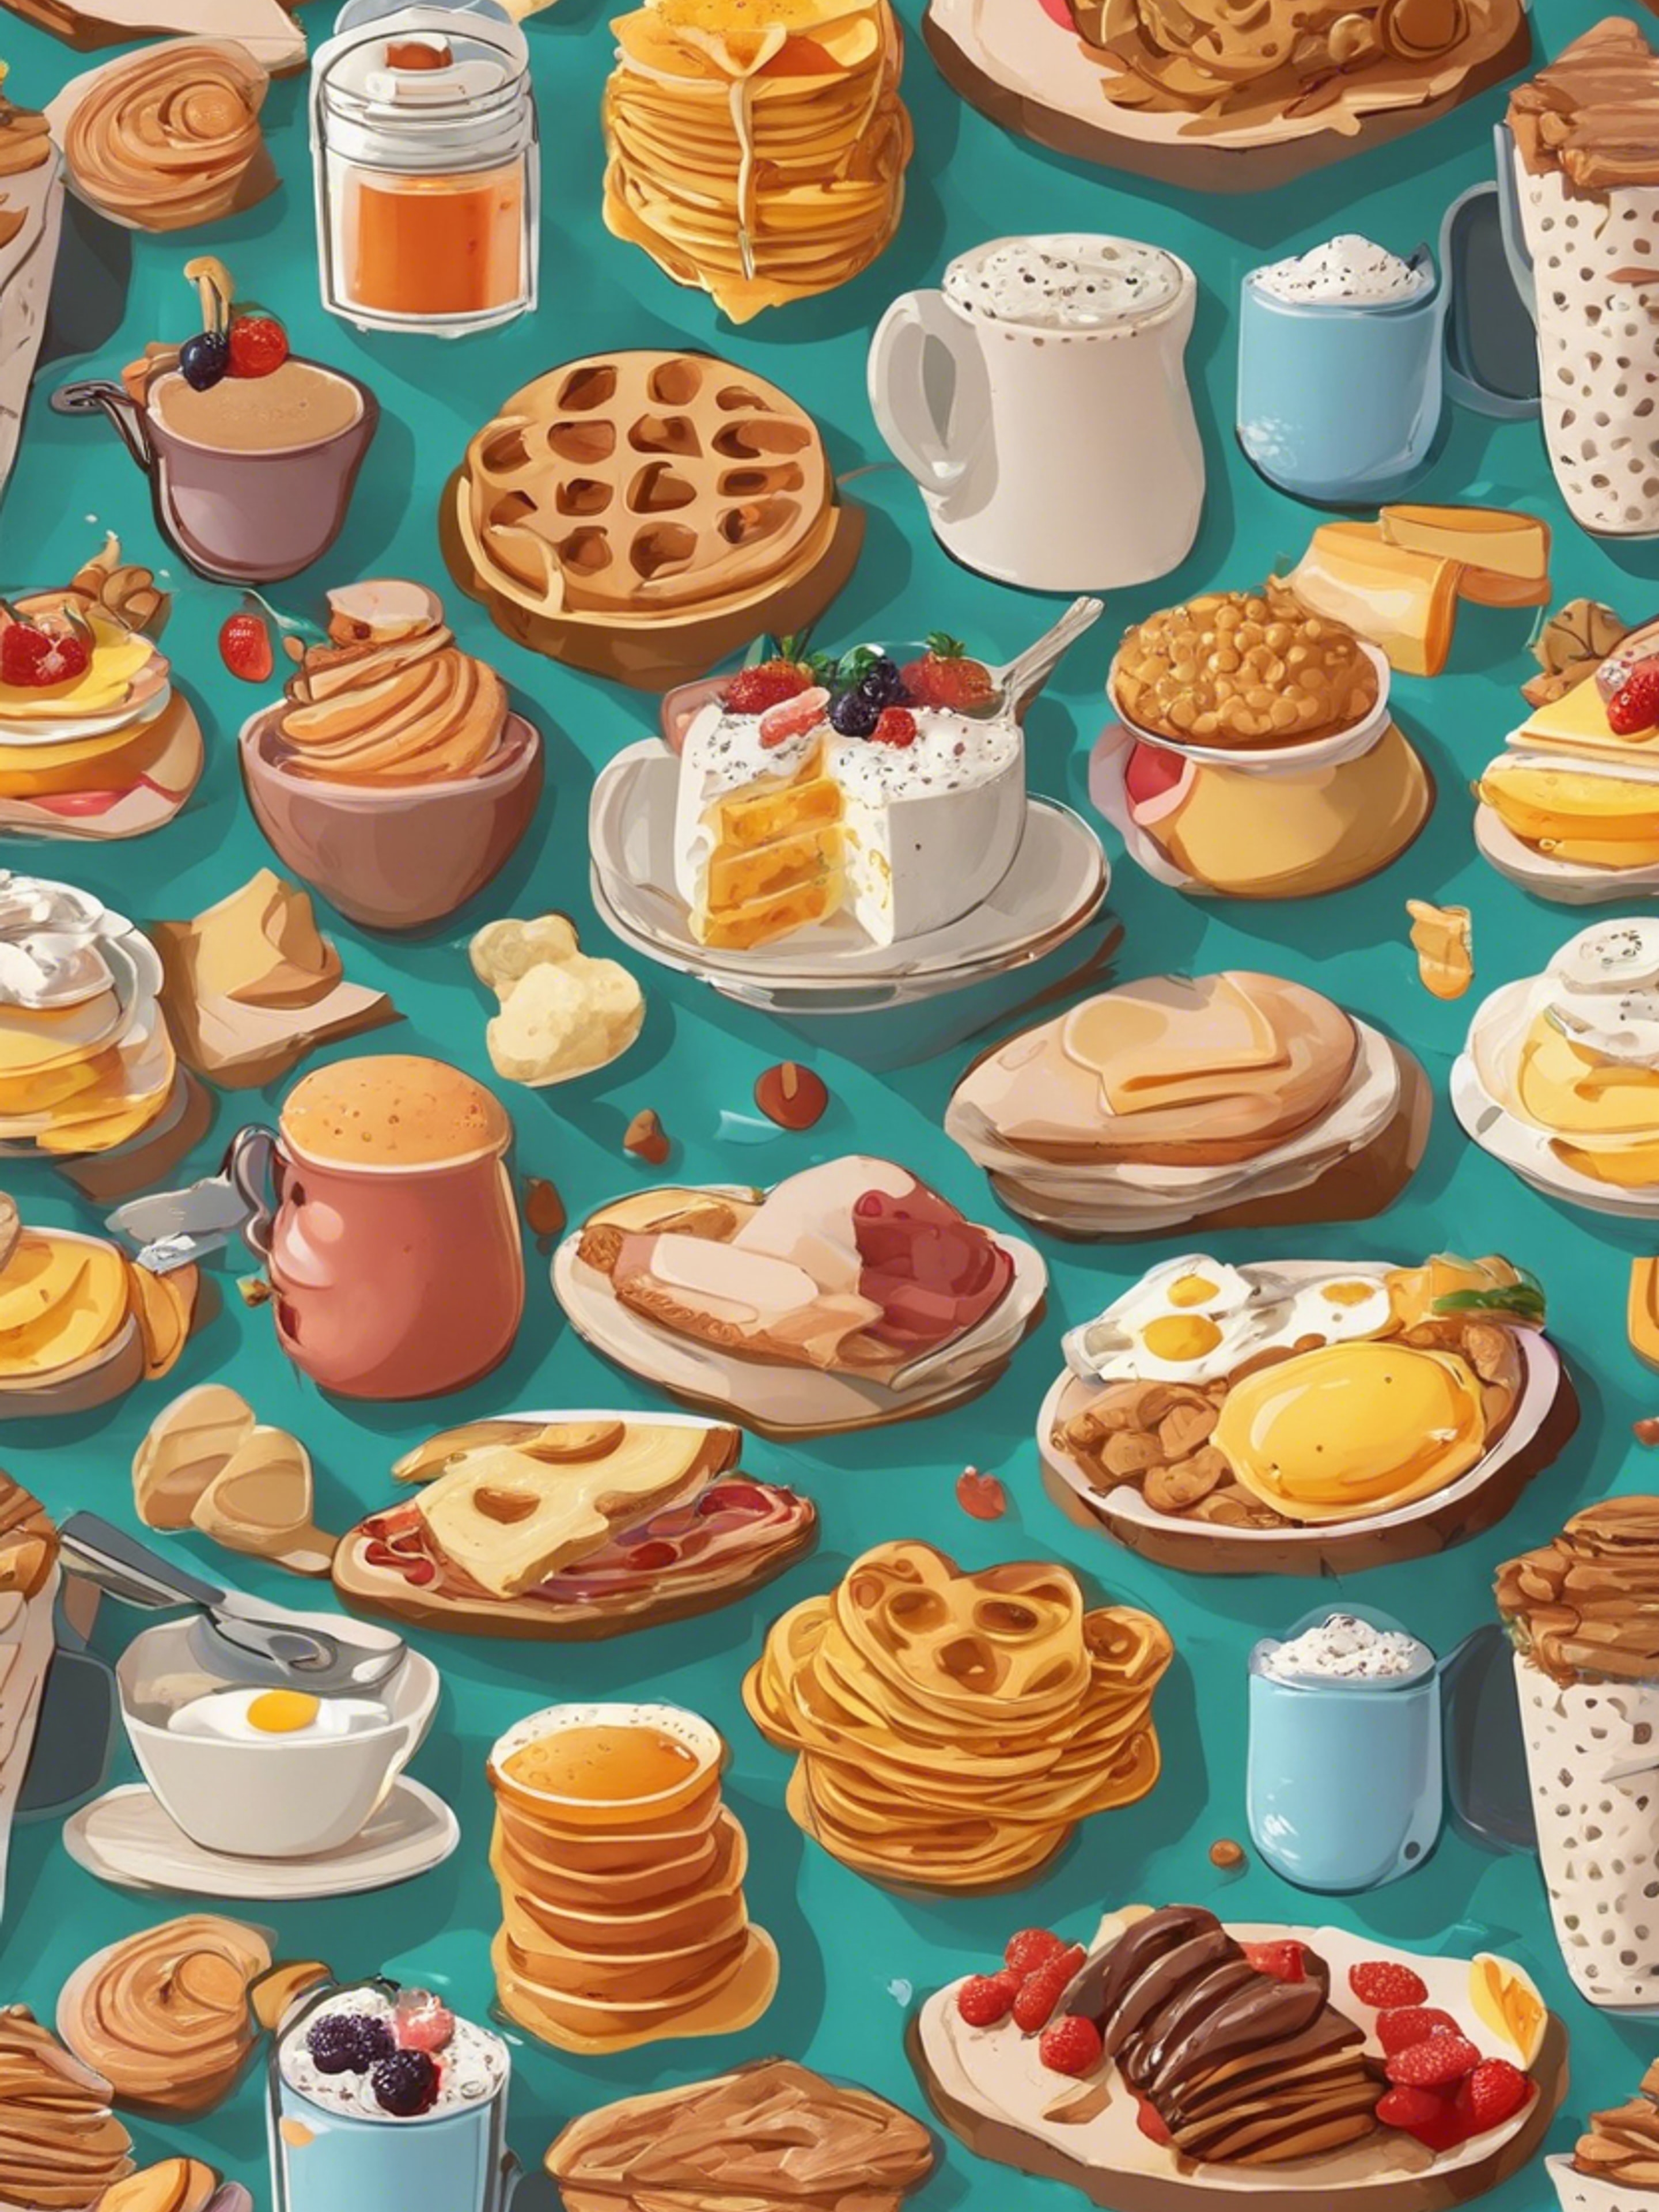 Cartoonish breakfast food items in an appealing, kid-friendly pattern. วอลล์เปเปอร์[fa493d8b255444e69f8d]